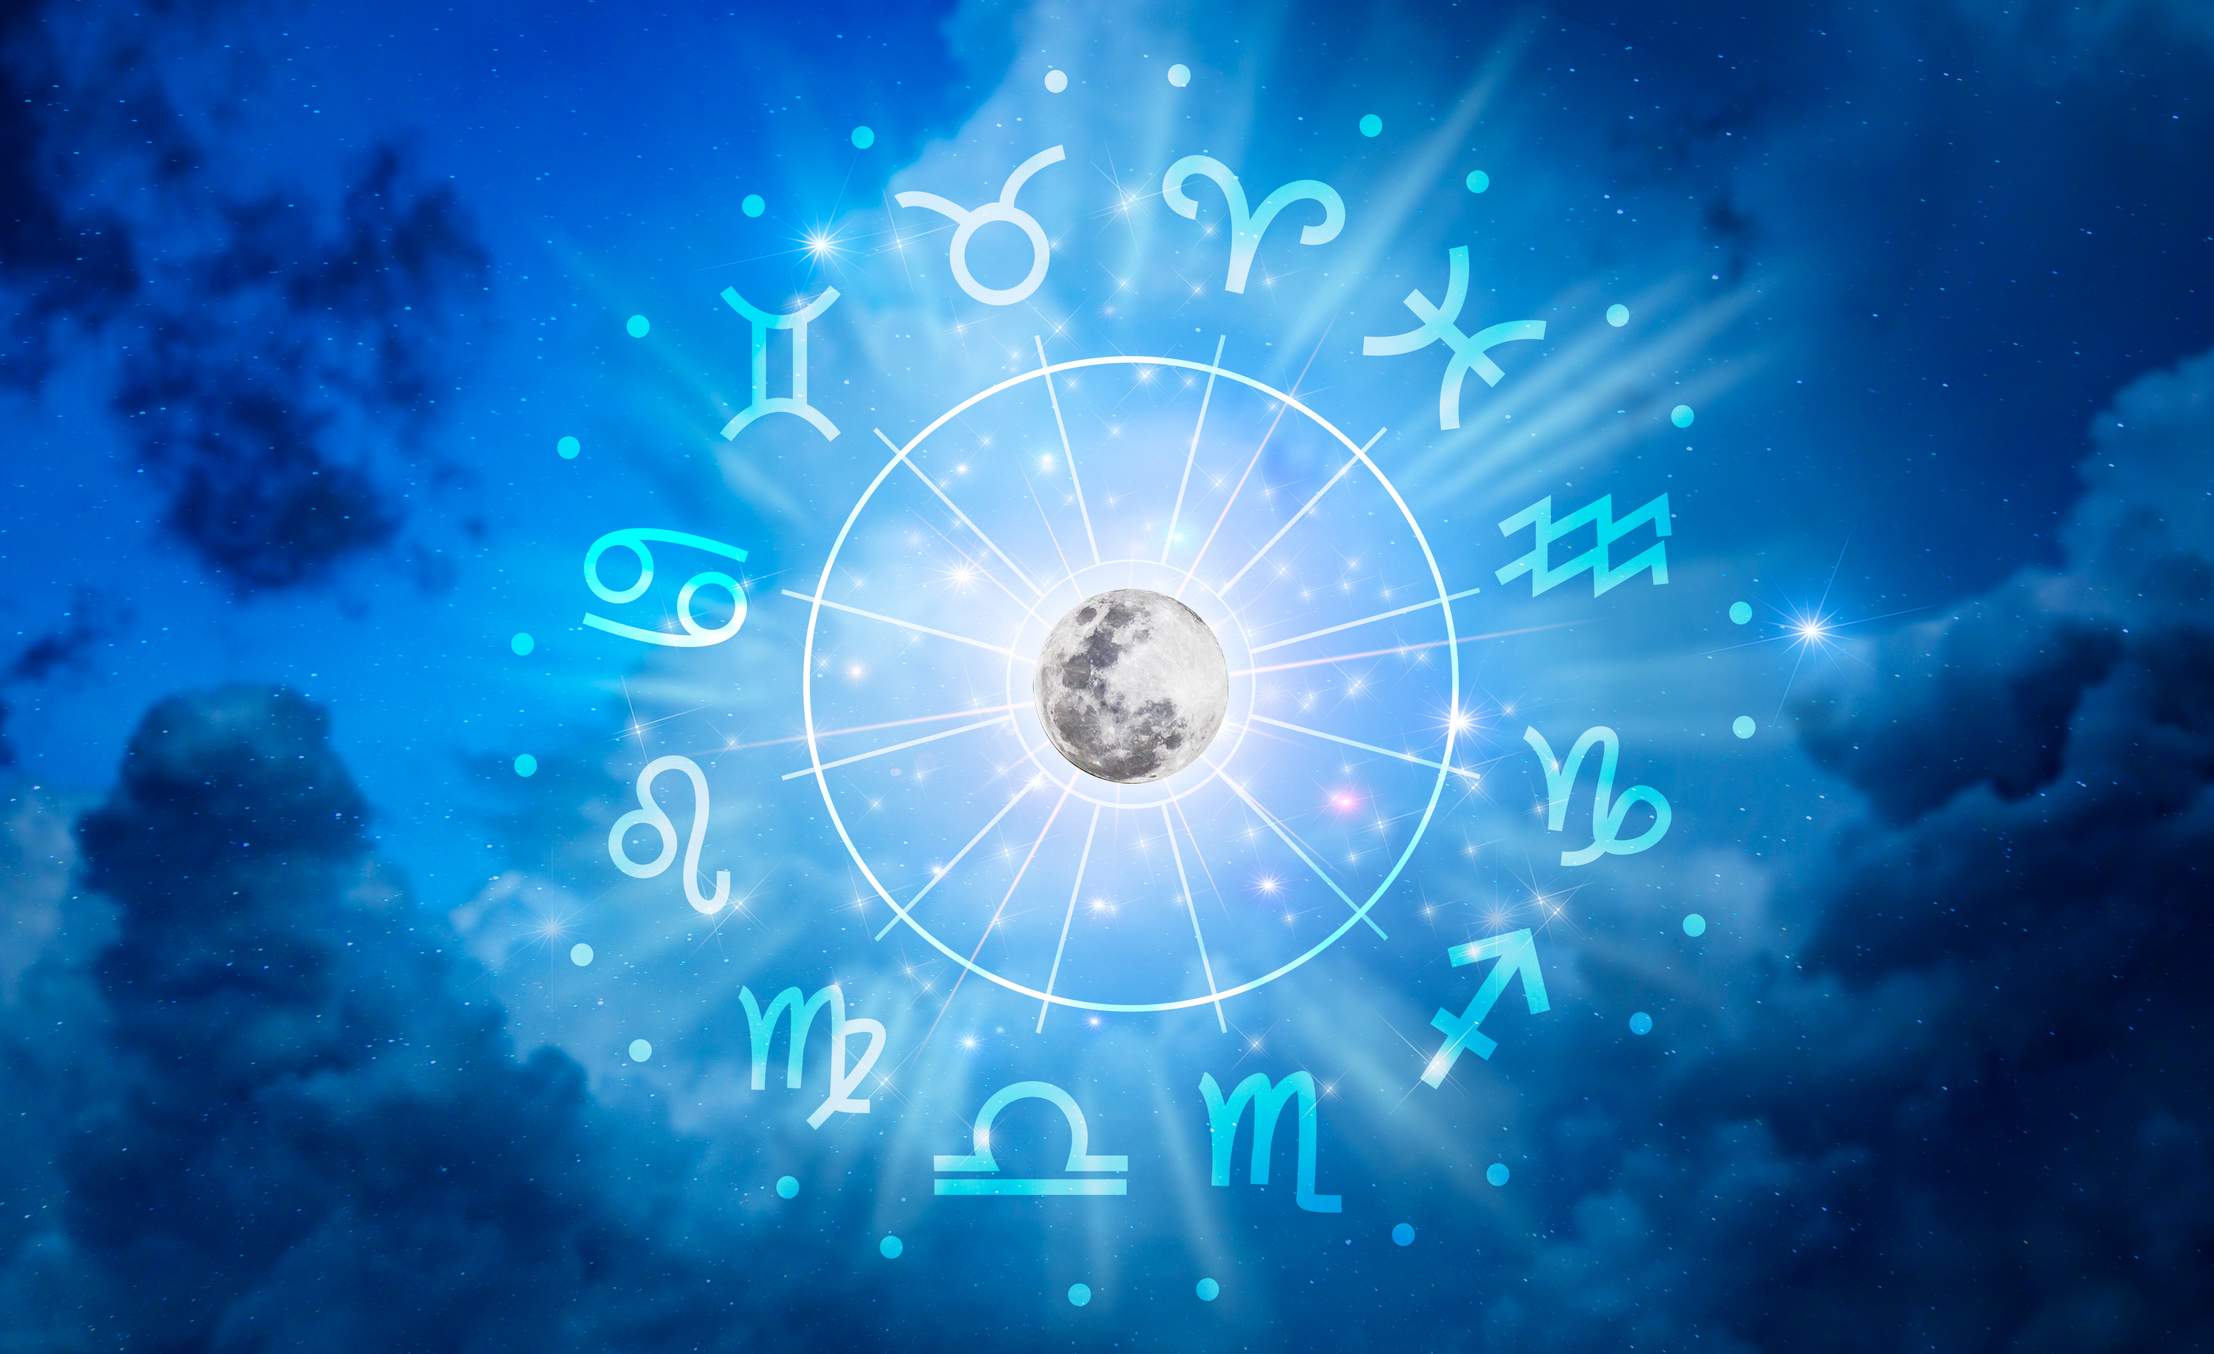 Napi horoszkóp a Rák szerelmi hódításra a Bika komoly sikerekre számíthat az Oroszlán bármibe